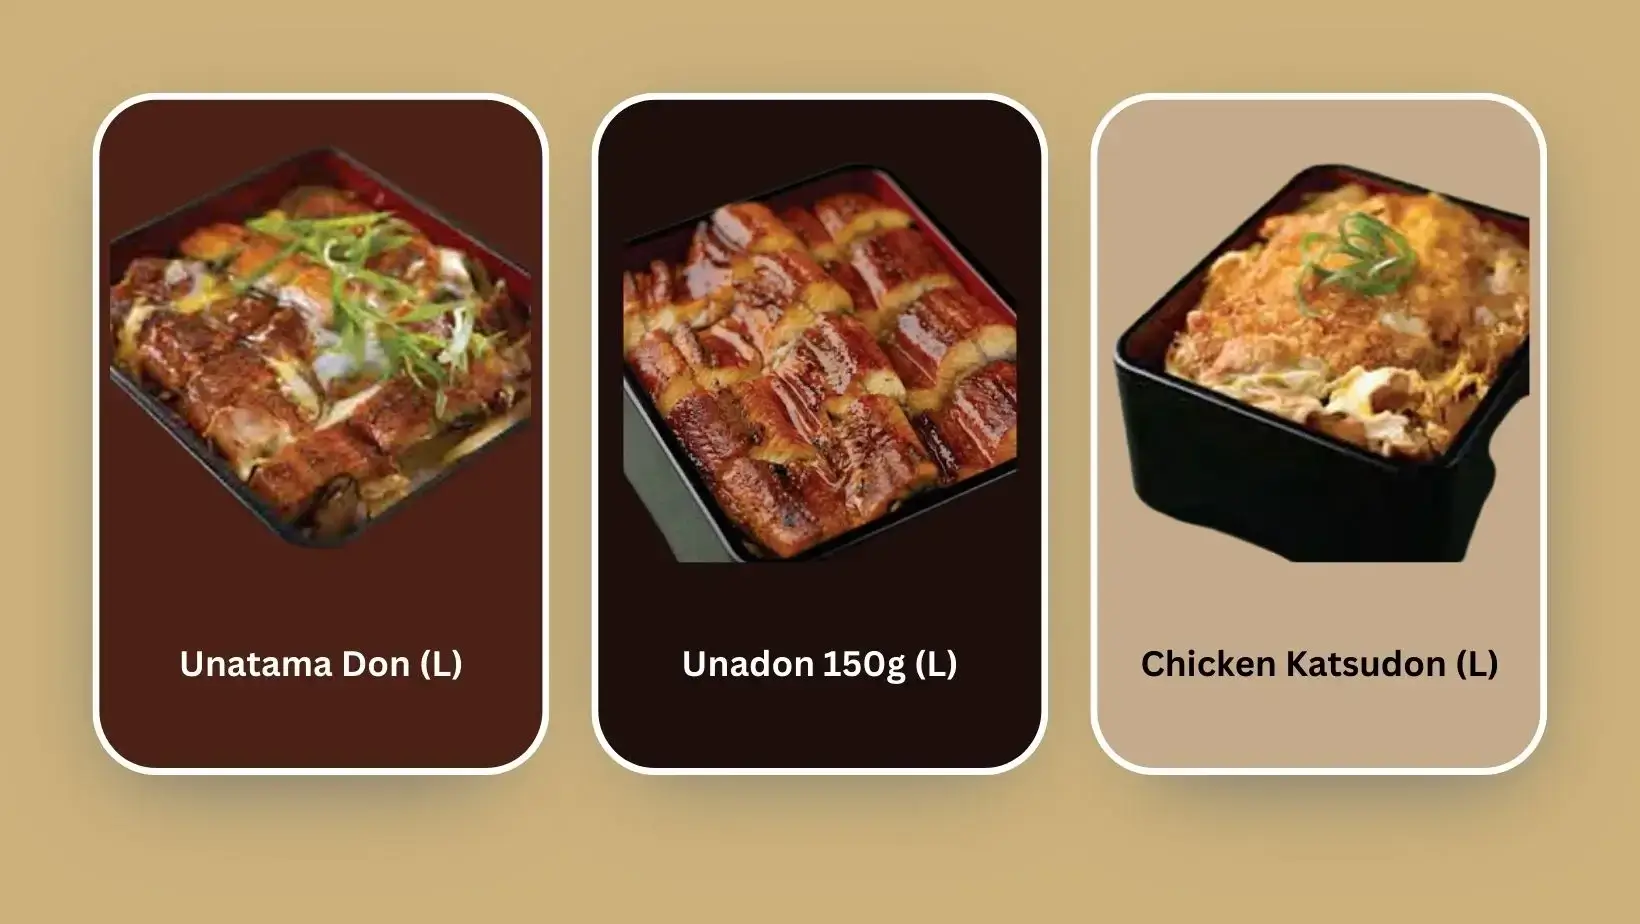 Unadon 150g (L), Unatama Don (L), and Chicken Katsudon (L)